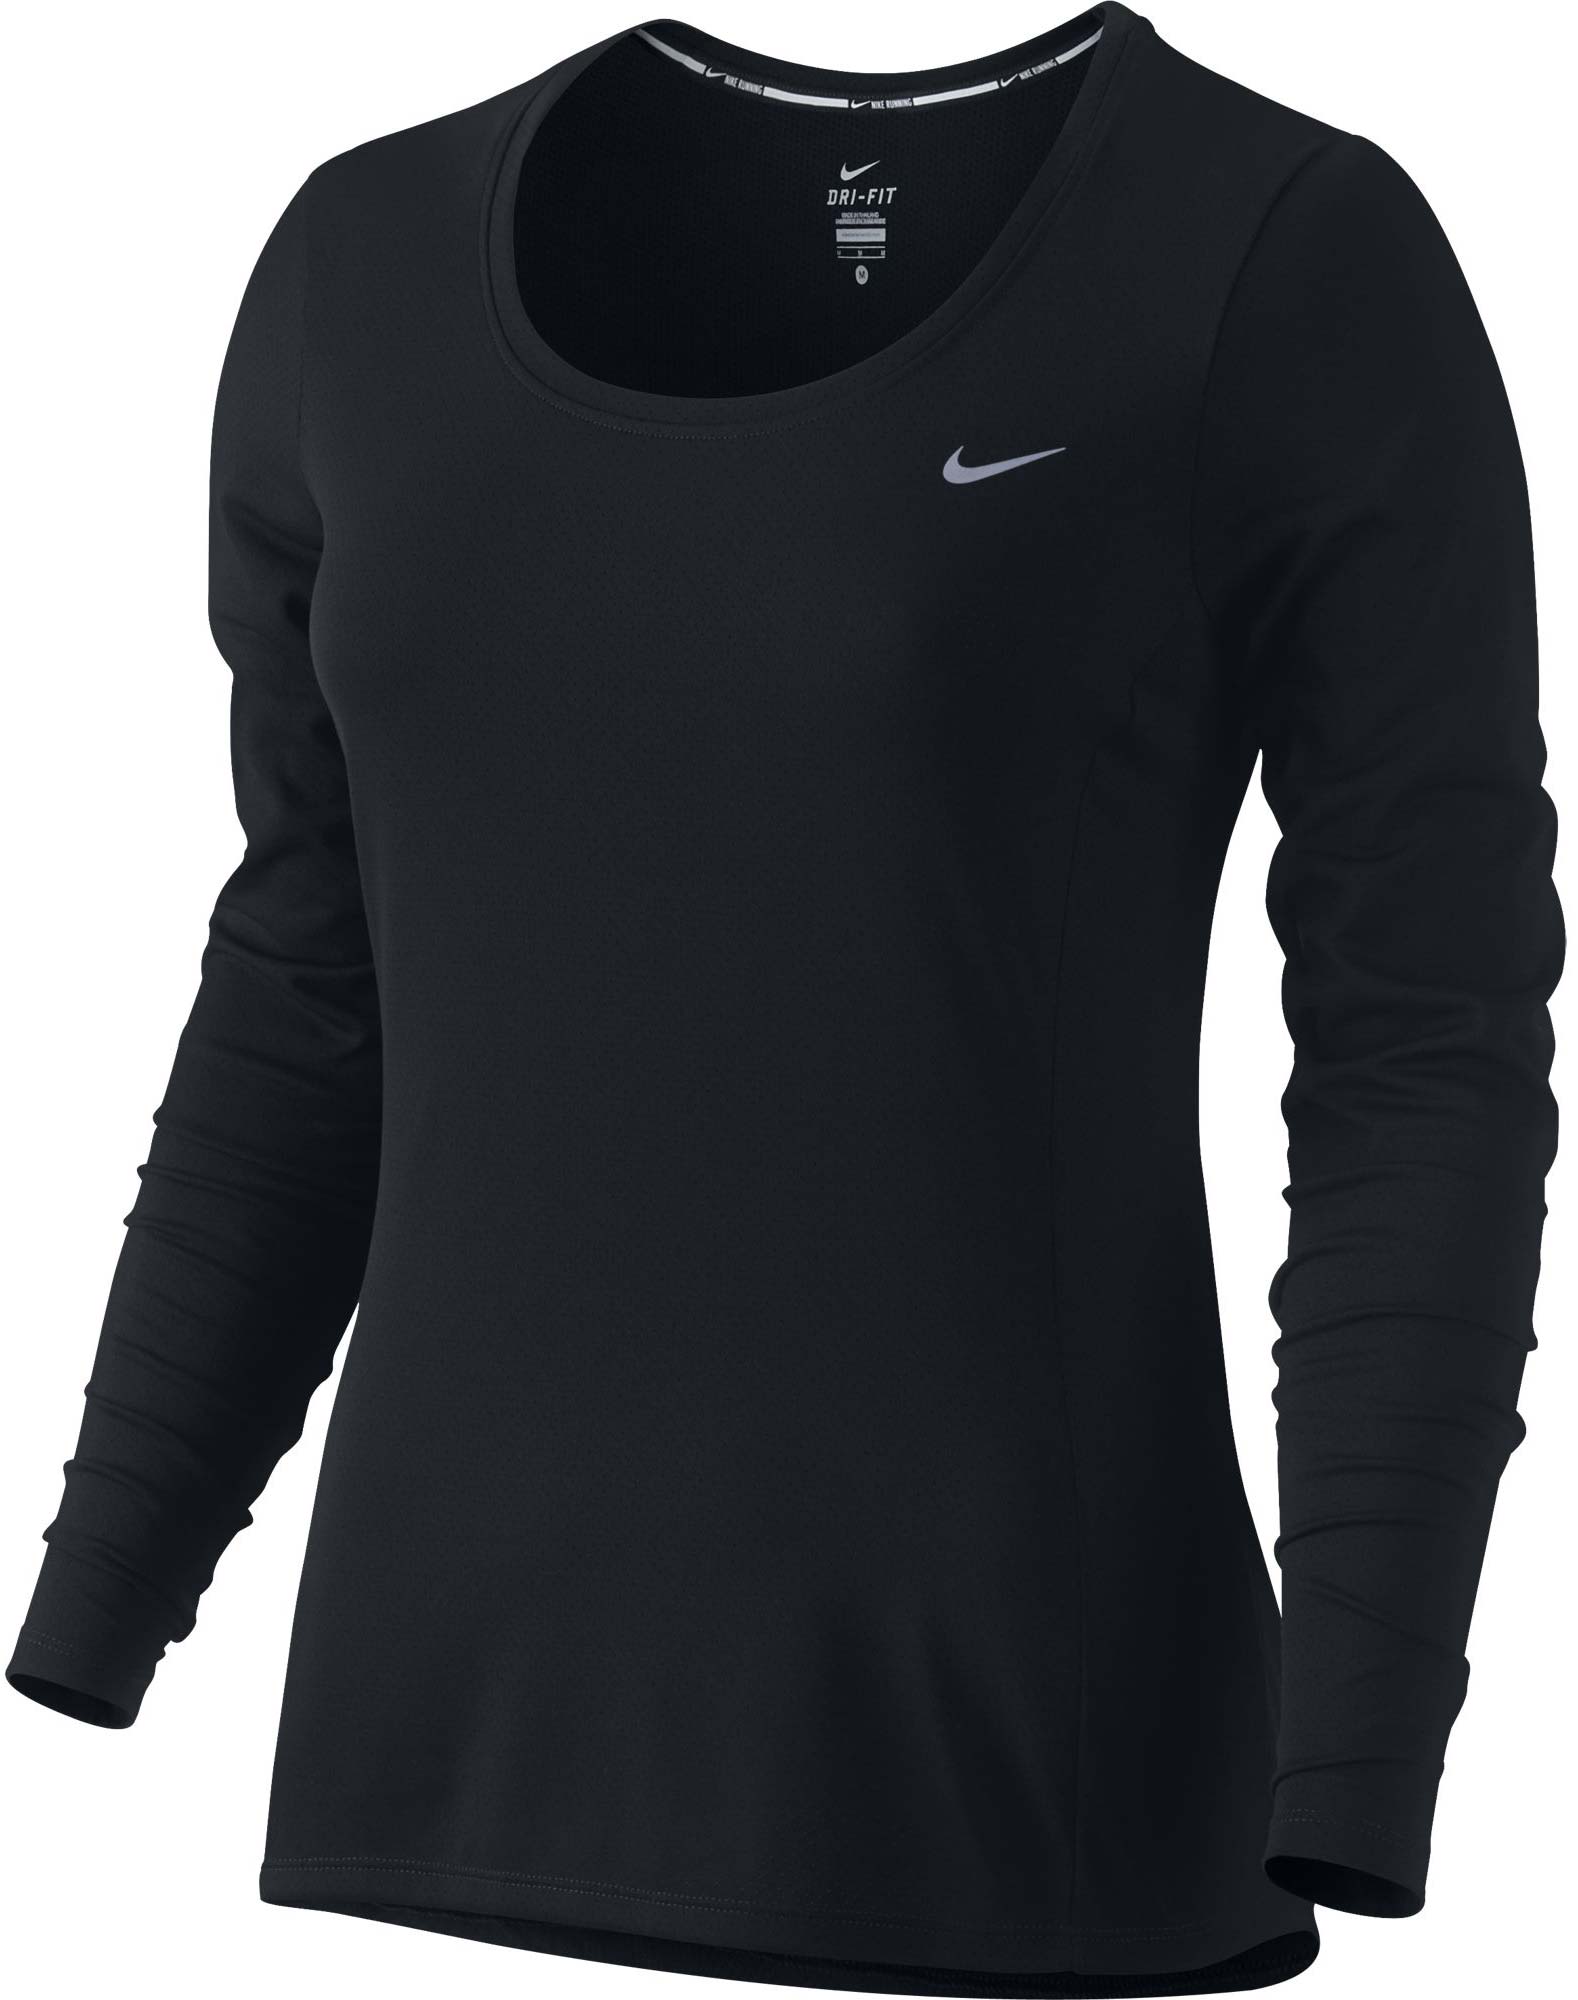 DRI-FIT CONTOUR LS - Women's Running Long-Sleeve Shirt